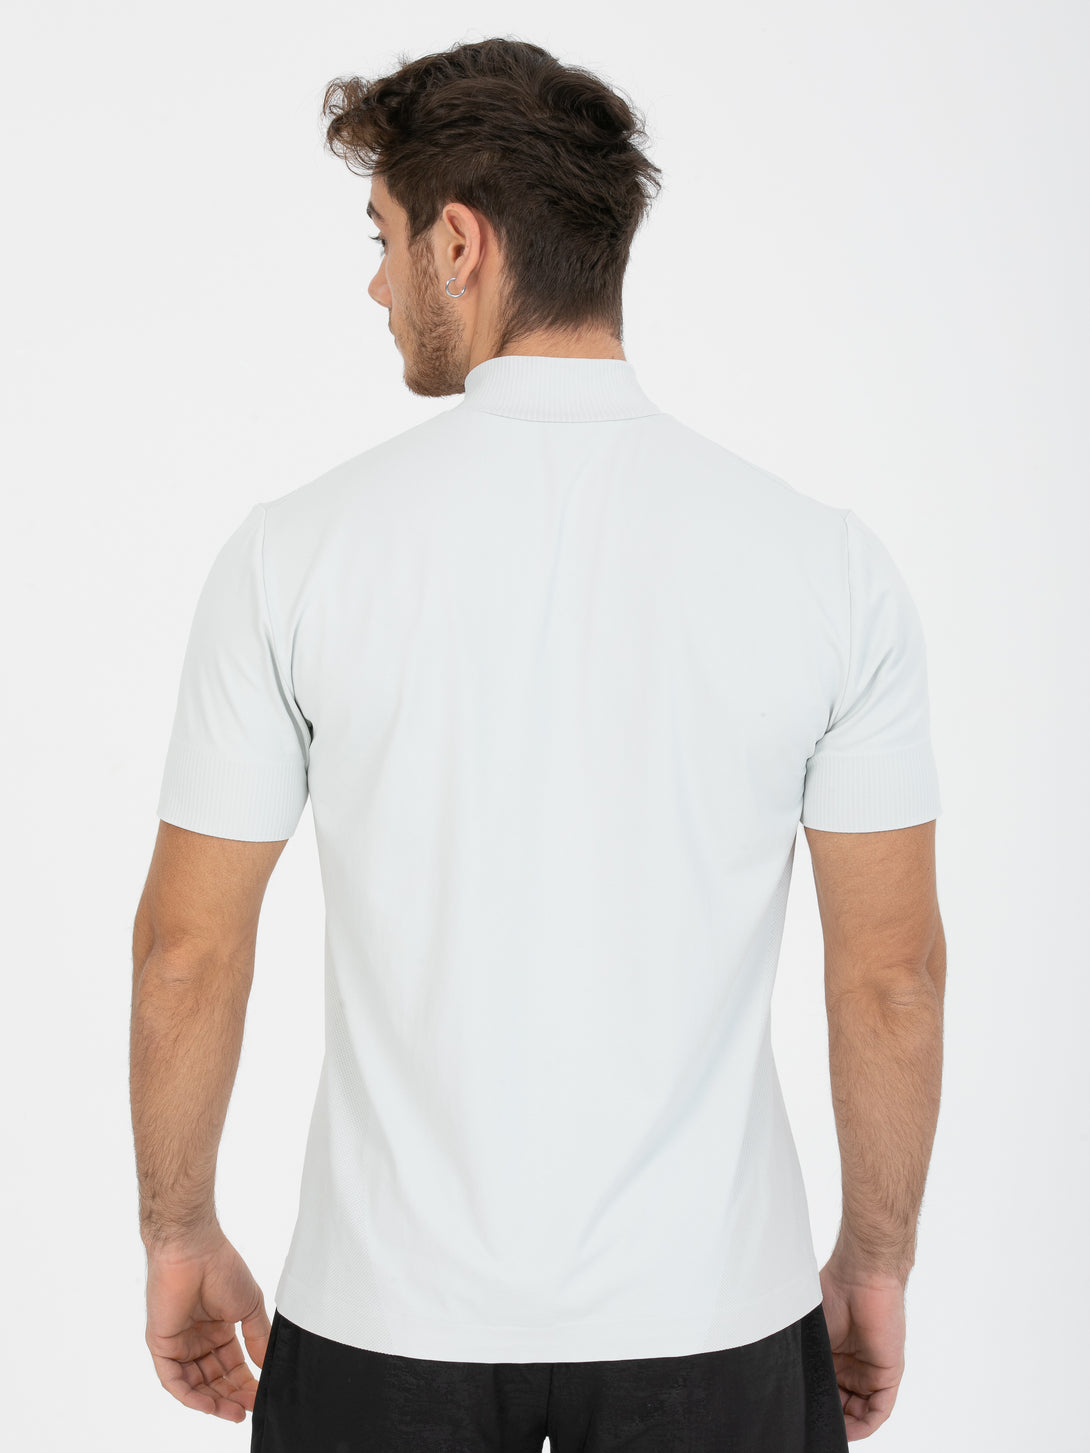 A Man Wearing Light Grey Color Seamless Short Sleeve Zipped T-Shirt